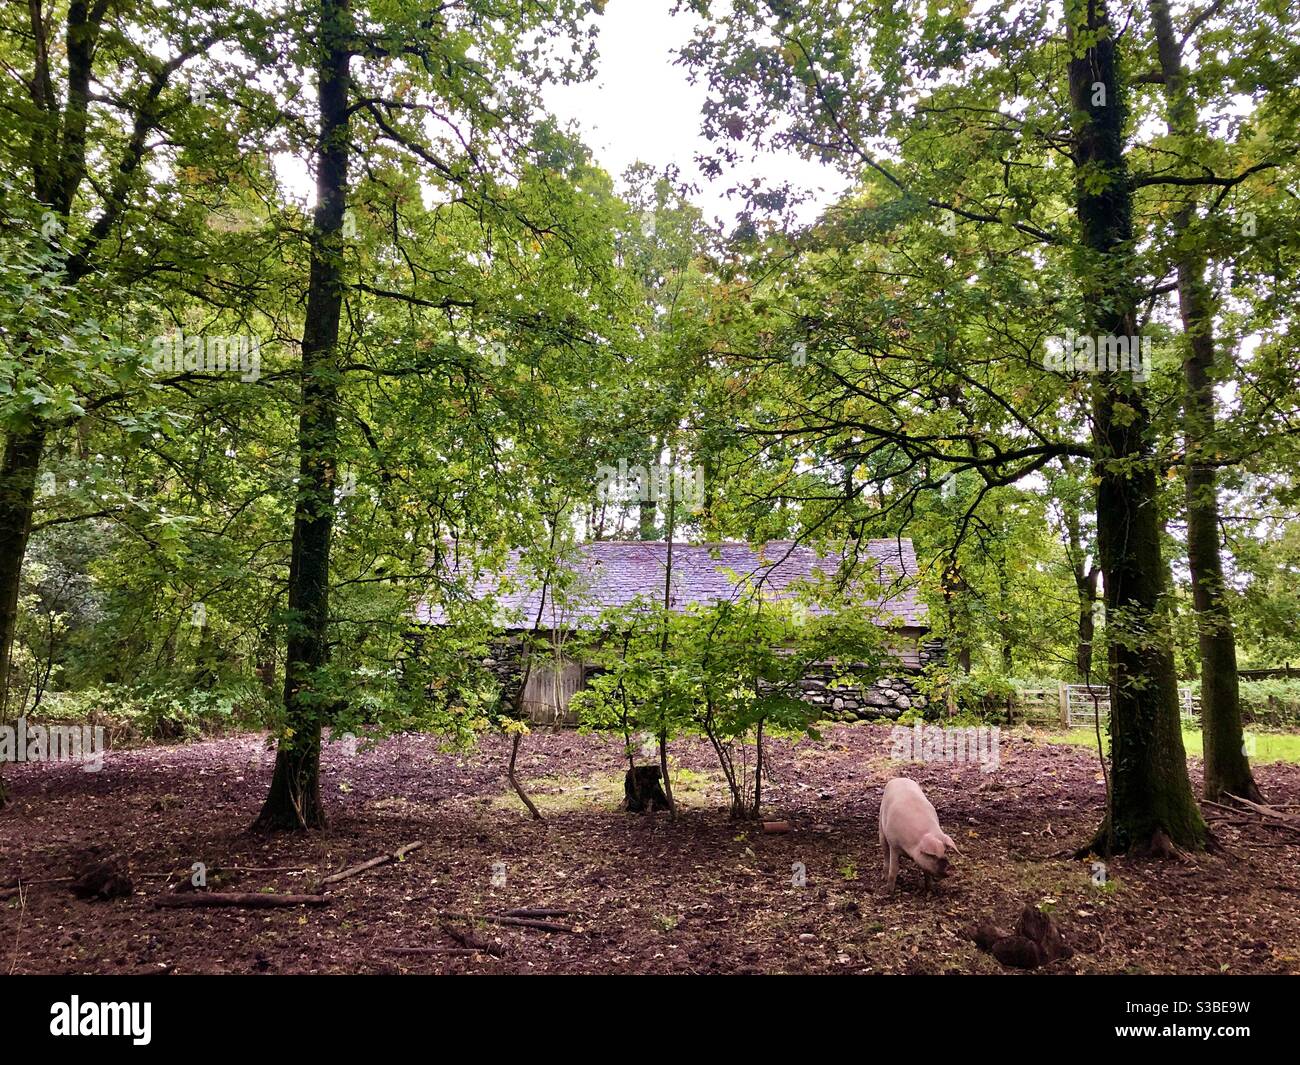 Cochons mangeant des glands dans un pigsty sous des chênes, musée St Fagans de la vie galloise, pays de Galles du Sud, septembre. Banque D'Images